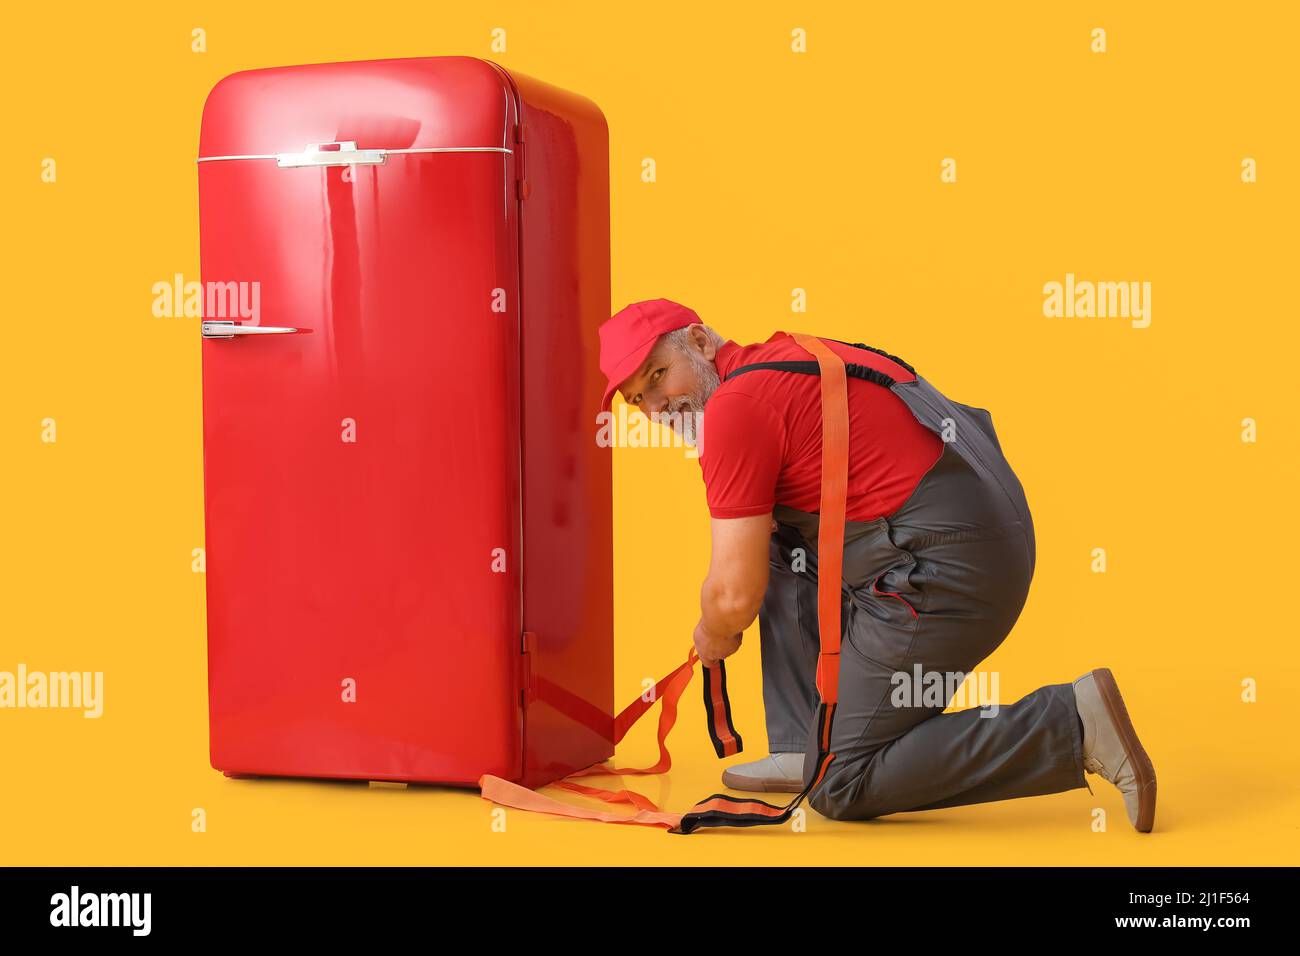 Reifer Arbeiter mit Tragegurt und Retro-Kühlschrank auf gelbem Hintergrund Stockfoto